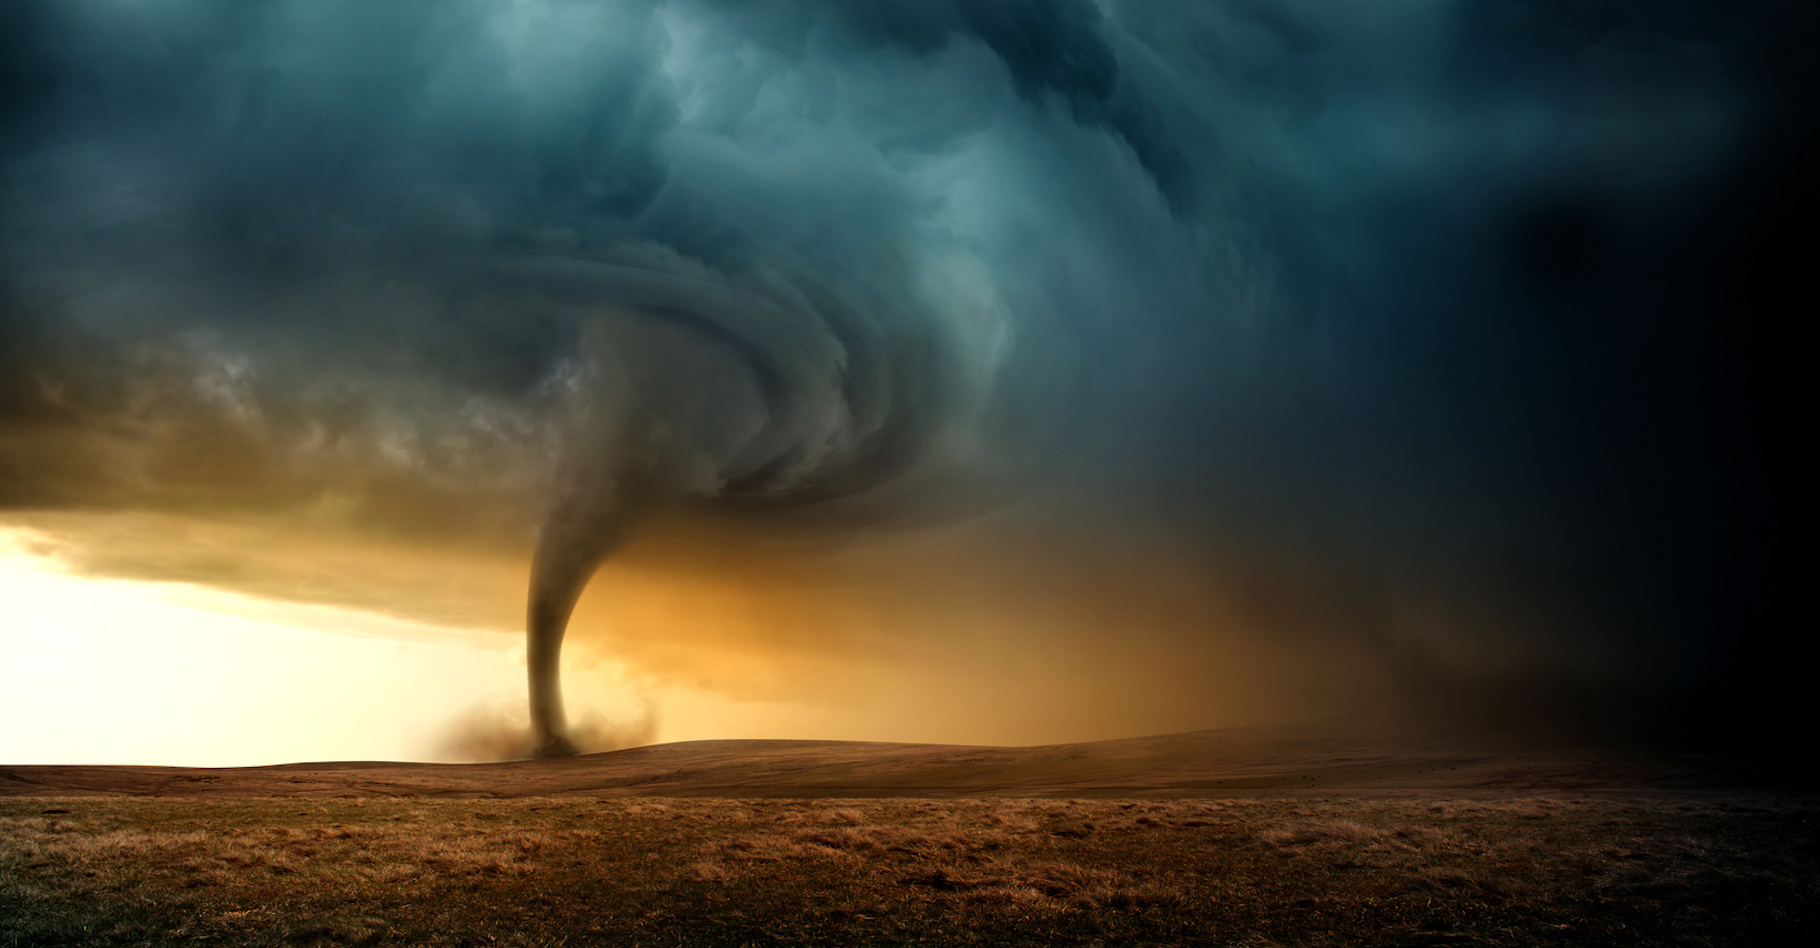 Les tornades sont classées selon une échelle qui donne une idée de leur intensité, l’échelle de Fujita améliorée. © James Thew, Fotolia